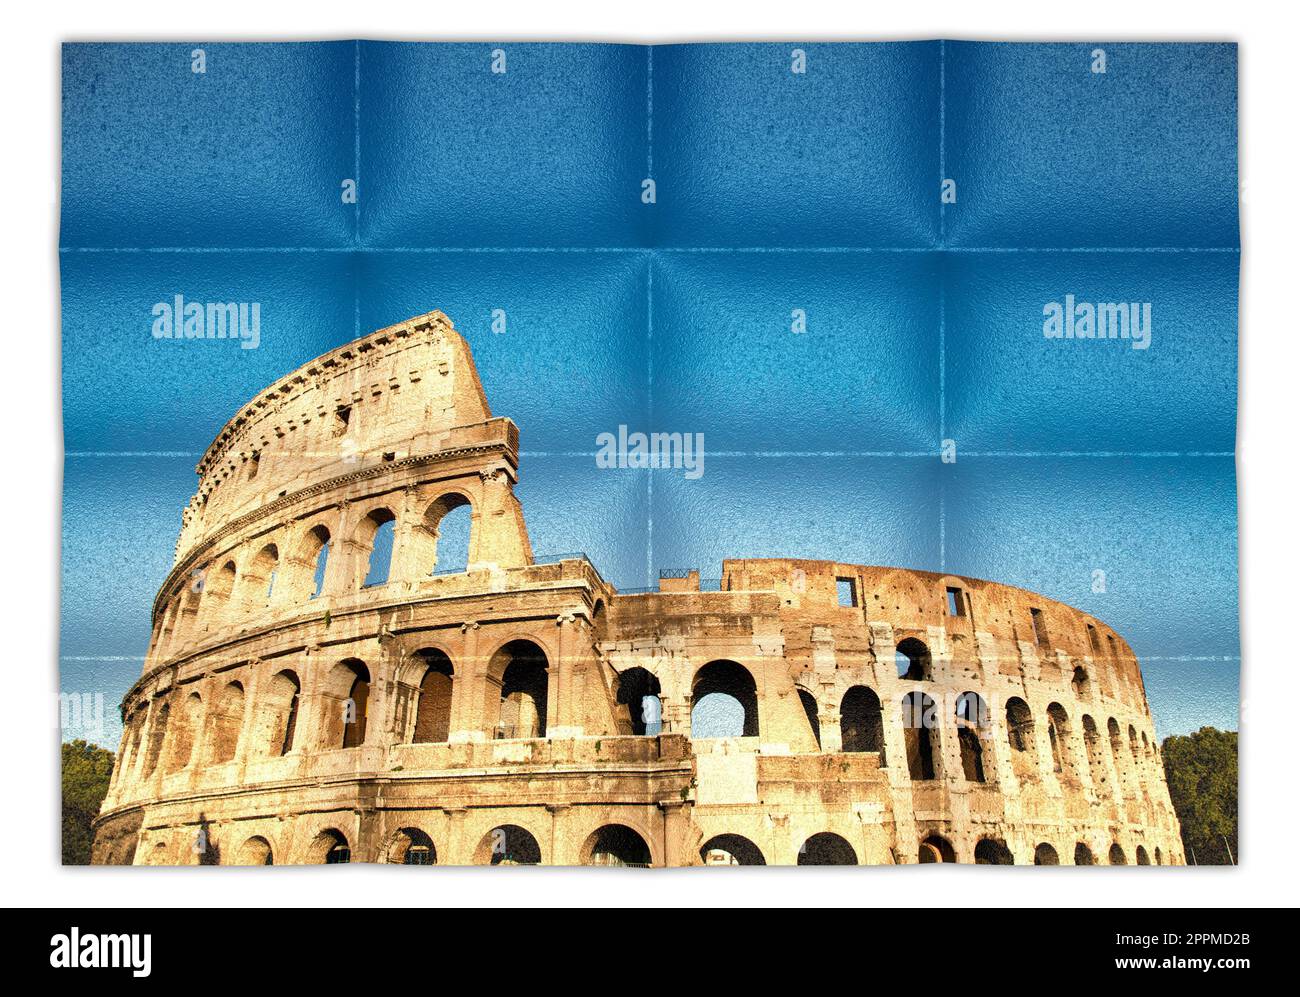 Italie, Rome - Colisée romain avec ciel bleu, le monument italien le plus célèbre. Banque D'Images